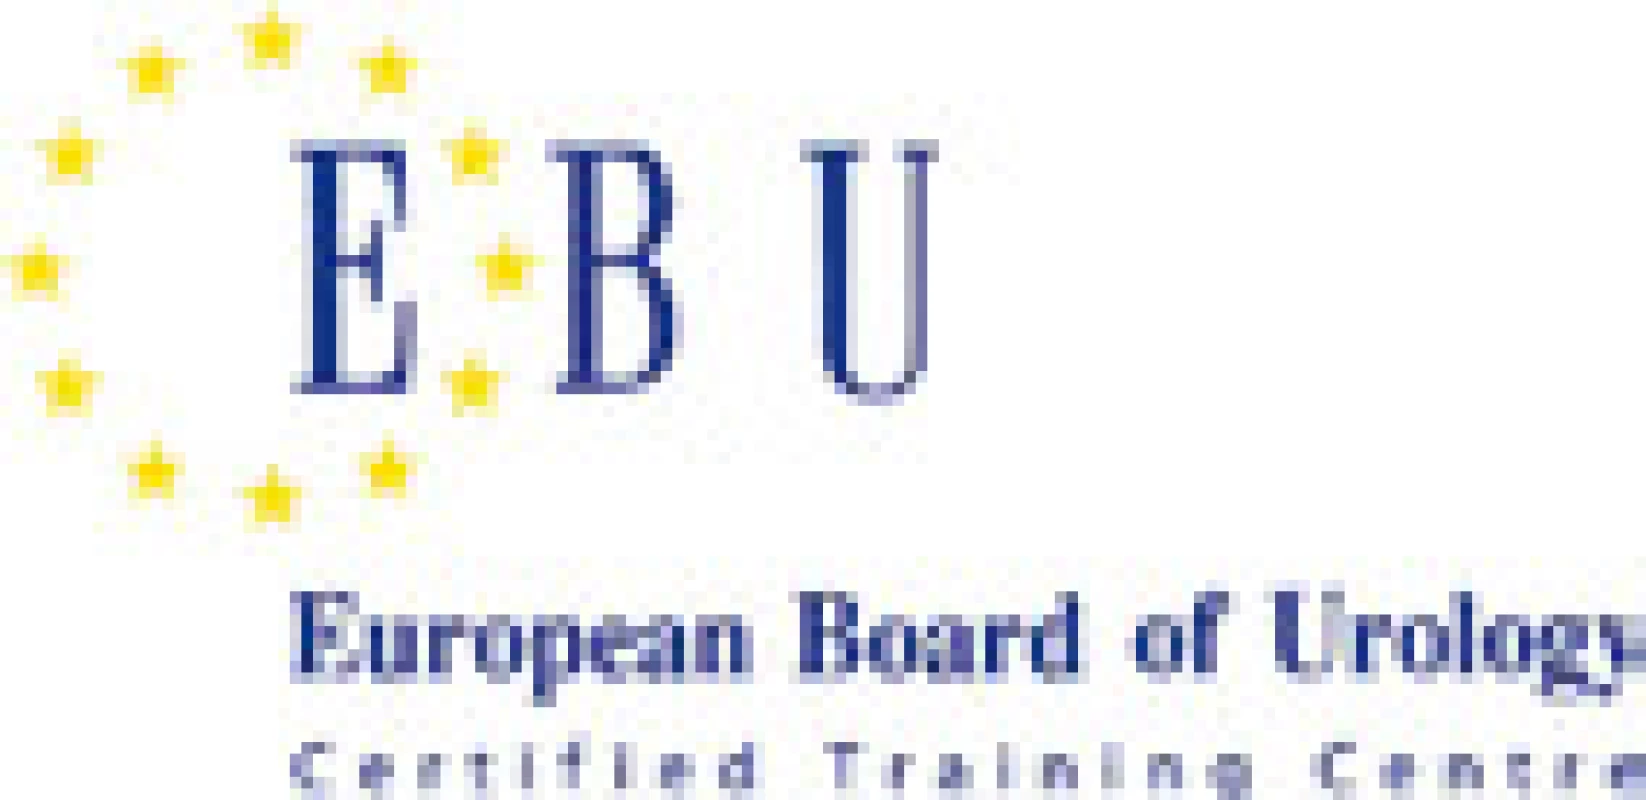 Logo, které smí užívat certifikovaná centra postgraduálního vzdělávání certifikovaná EBU
Fig. 1. Logo of centers certified by EBU